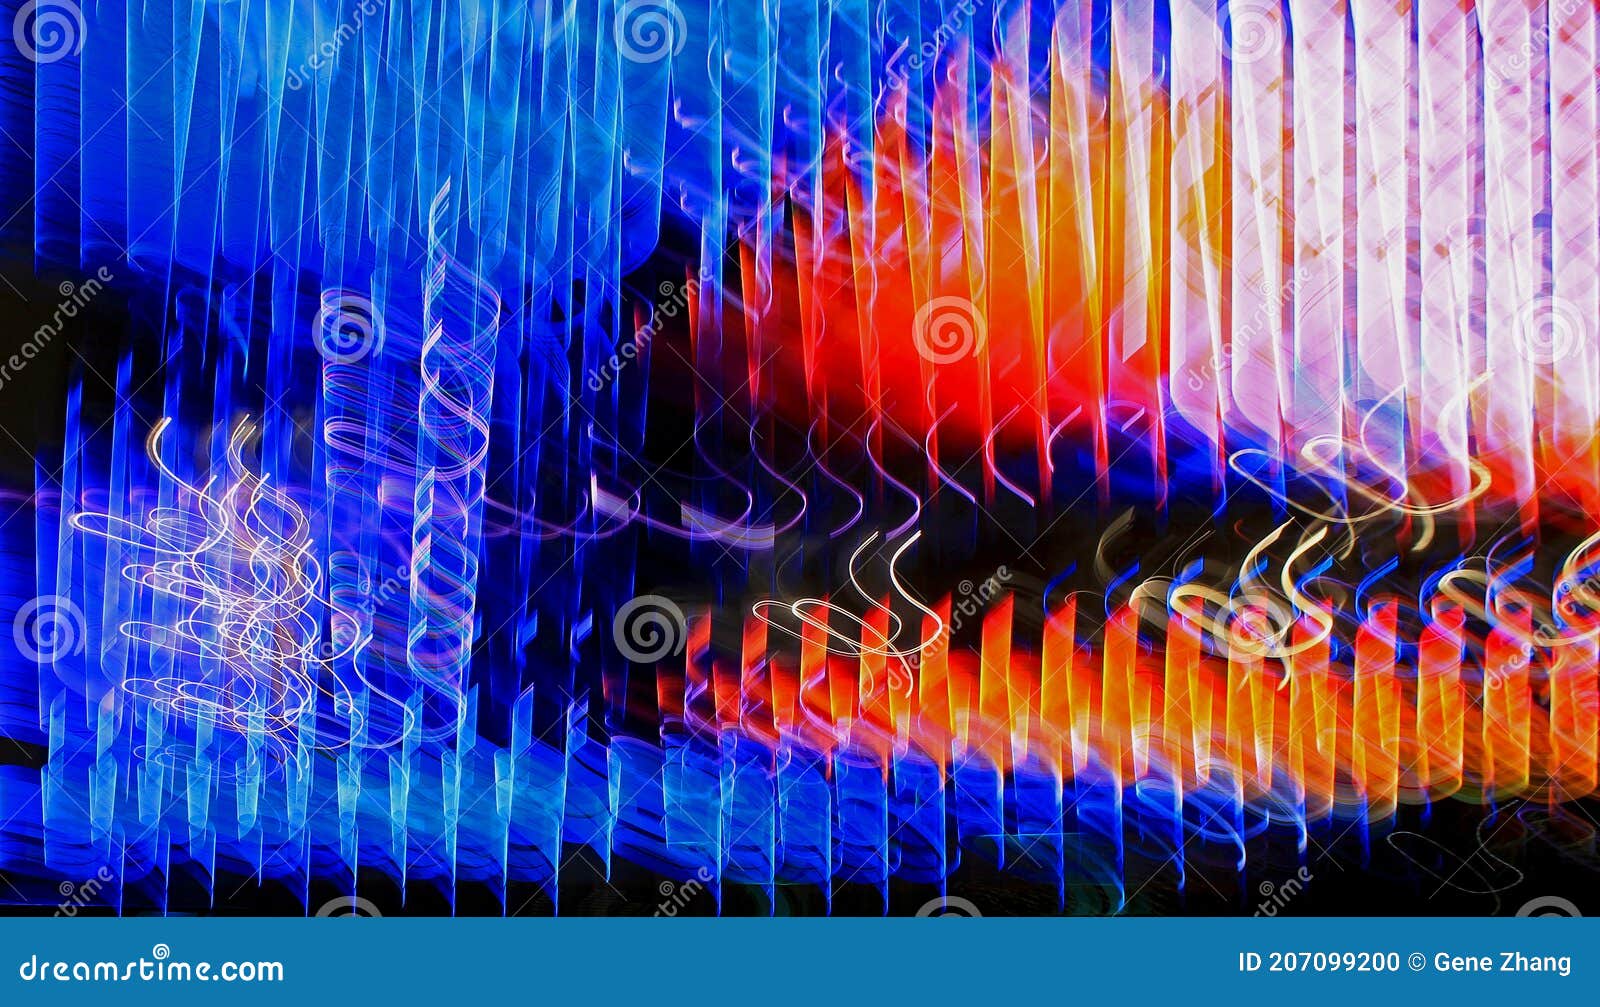 blurred lighting effect in spirals